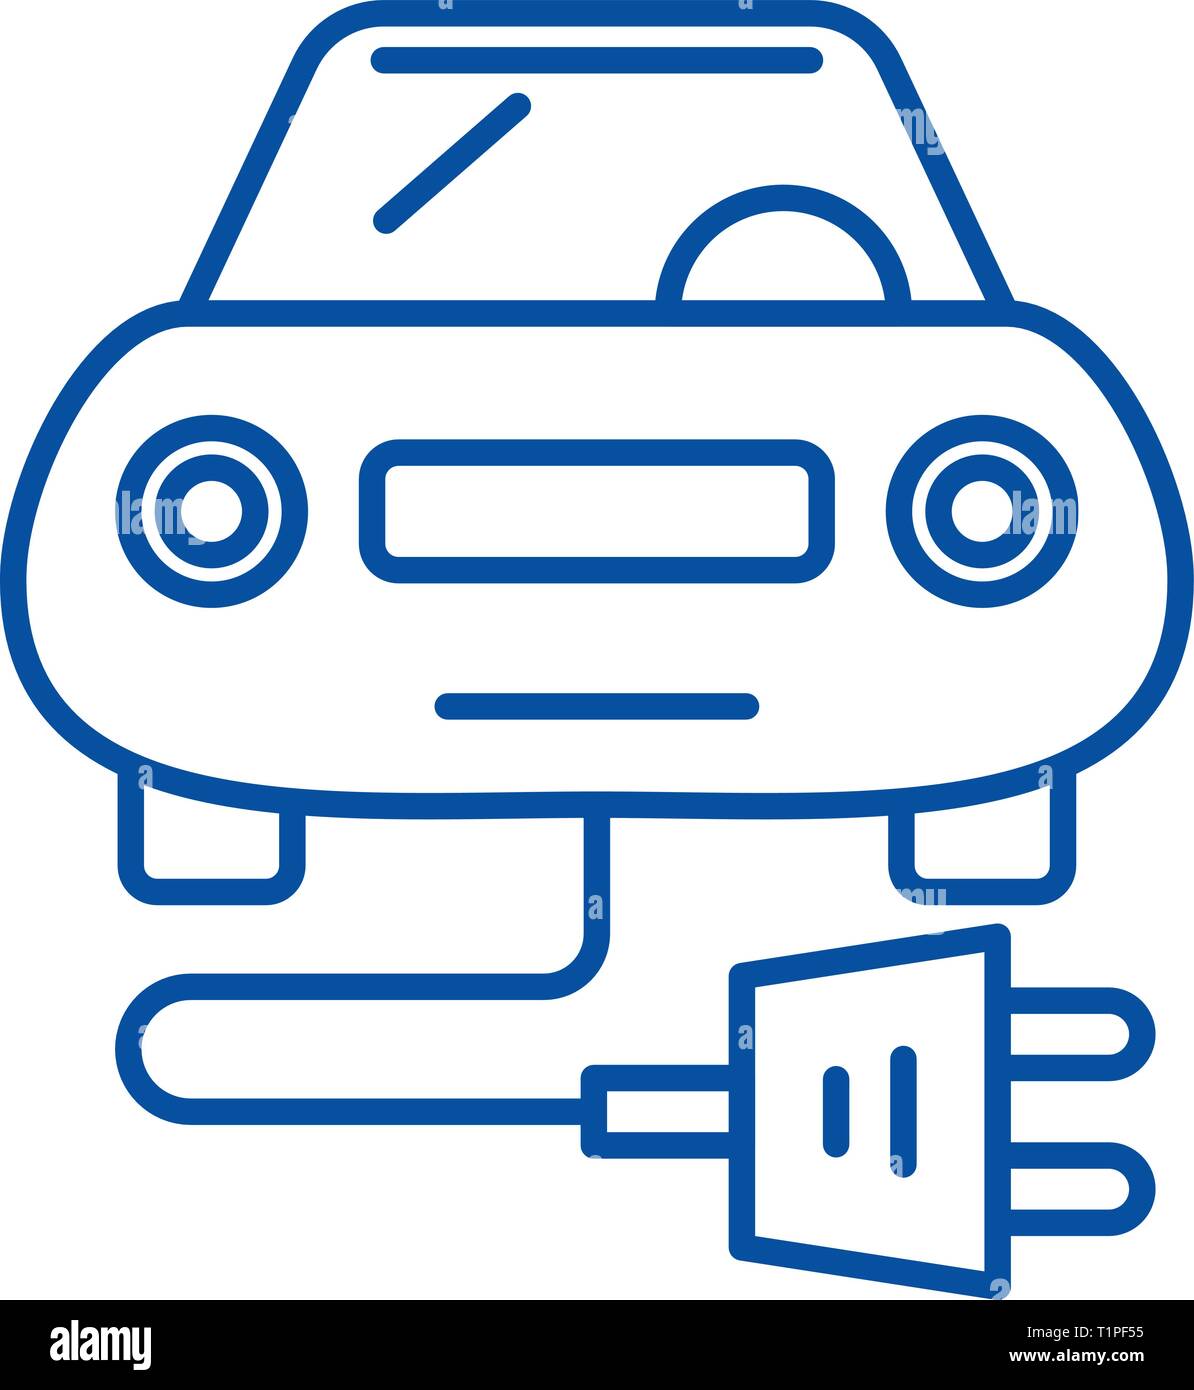 Symbol für elektrischen Stecker im Fahrzeug. Umriss elektrischen